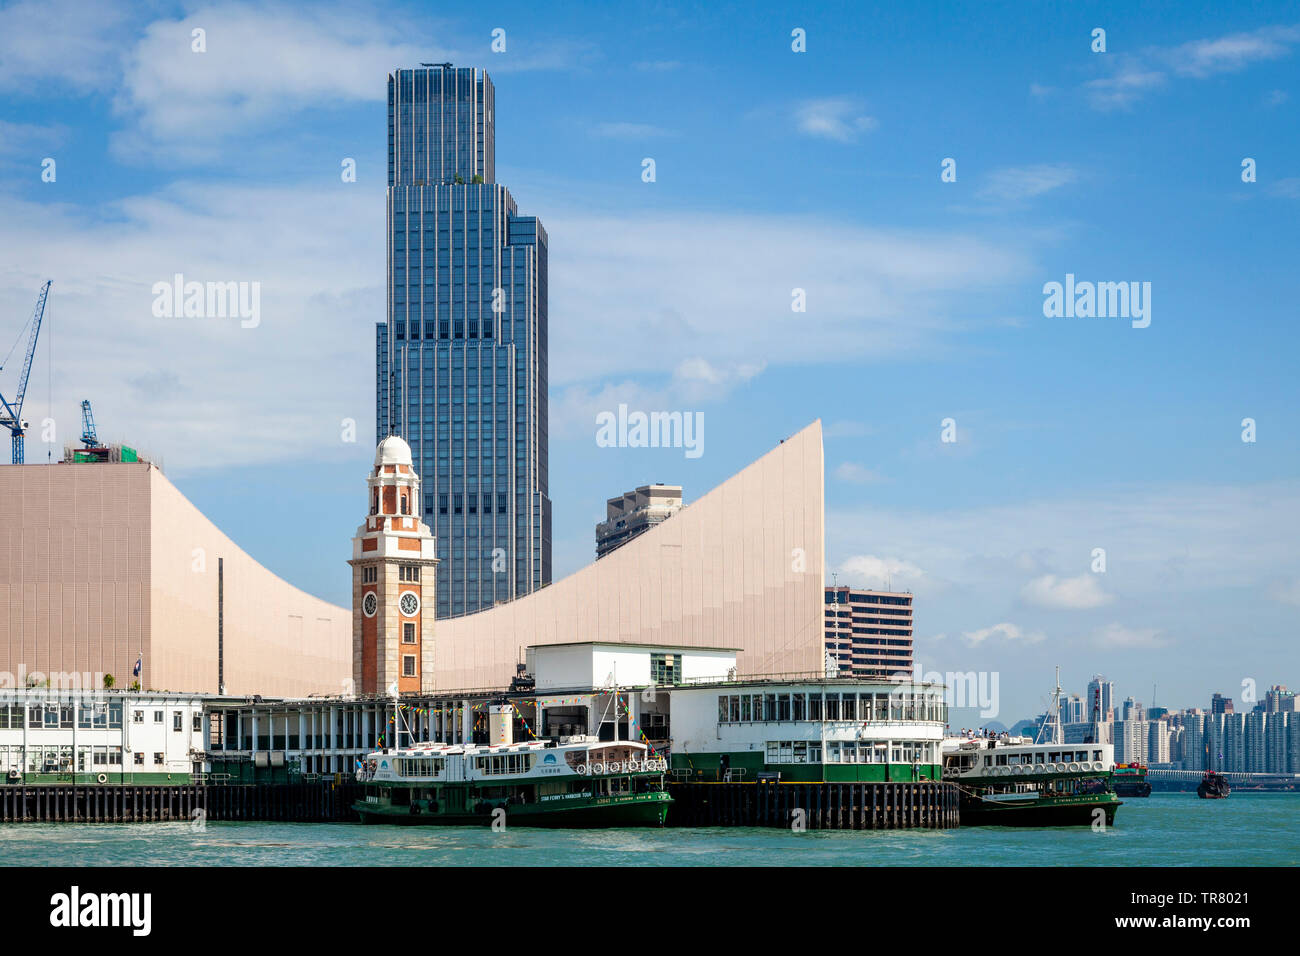 Le Star Ferry Pier, Musée de l'espace et la Tour de l'horloge, Kowloon, Hong Kong, Chine Banque D'Images